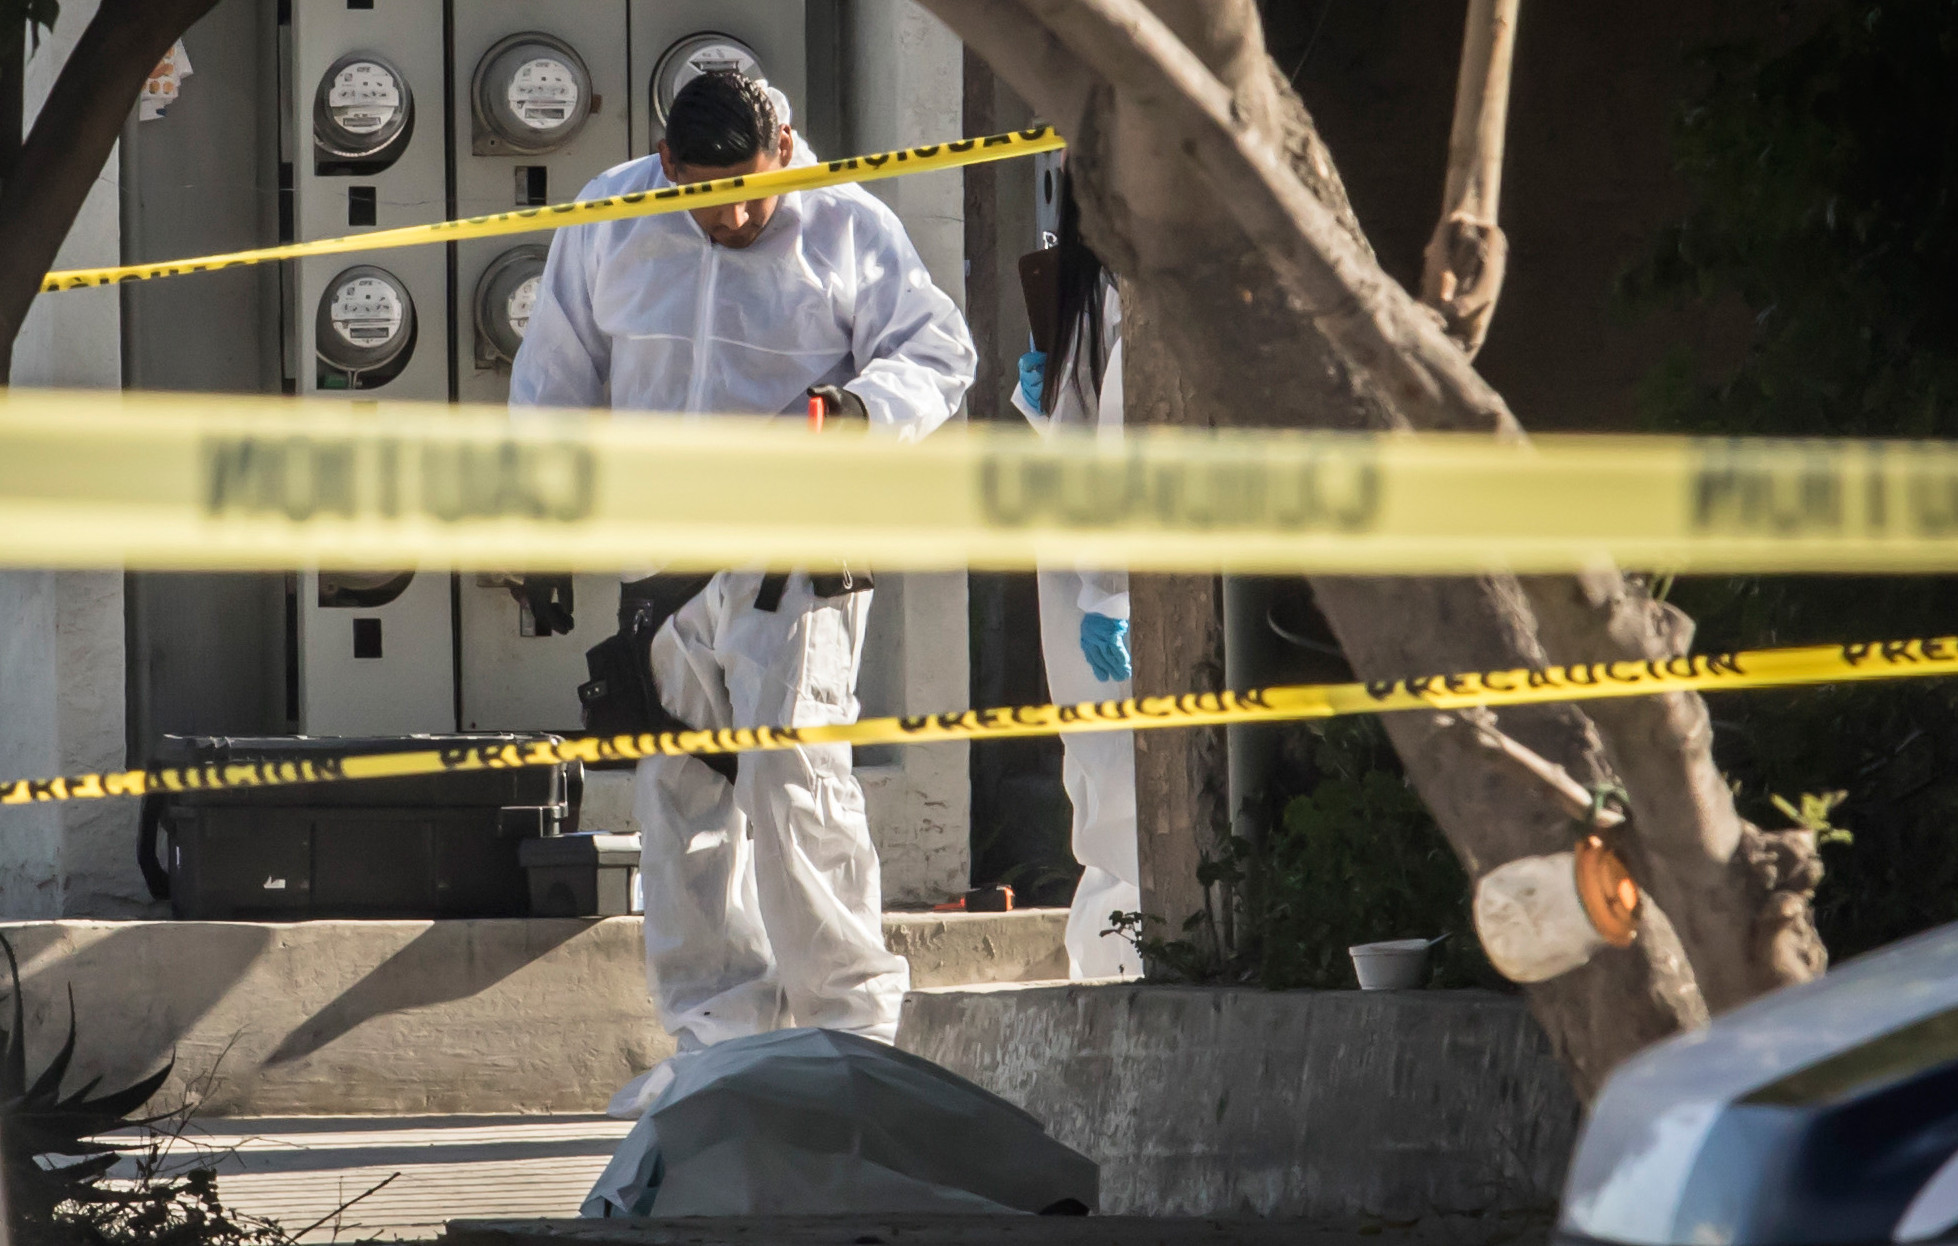  La violencia no cesa en el norte; Tijuana está plagado de homicidios